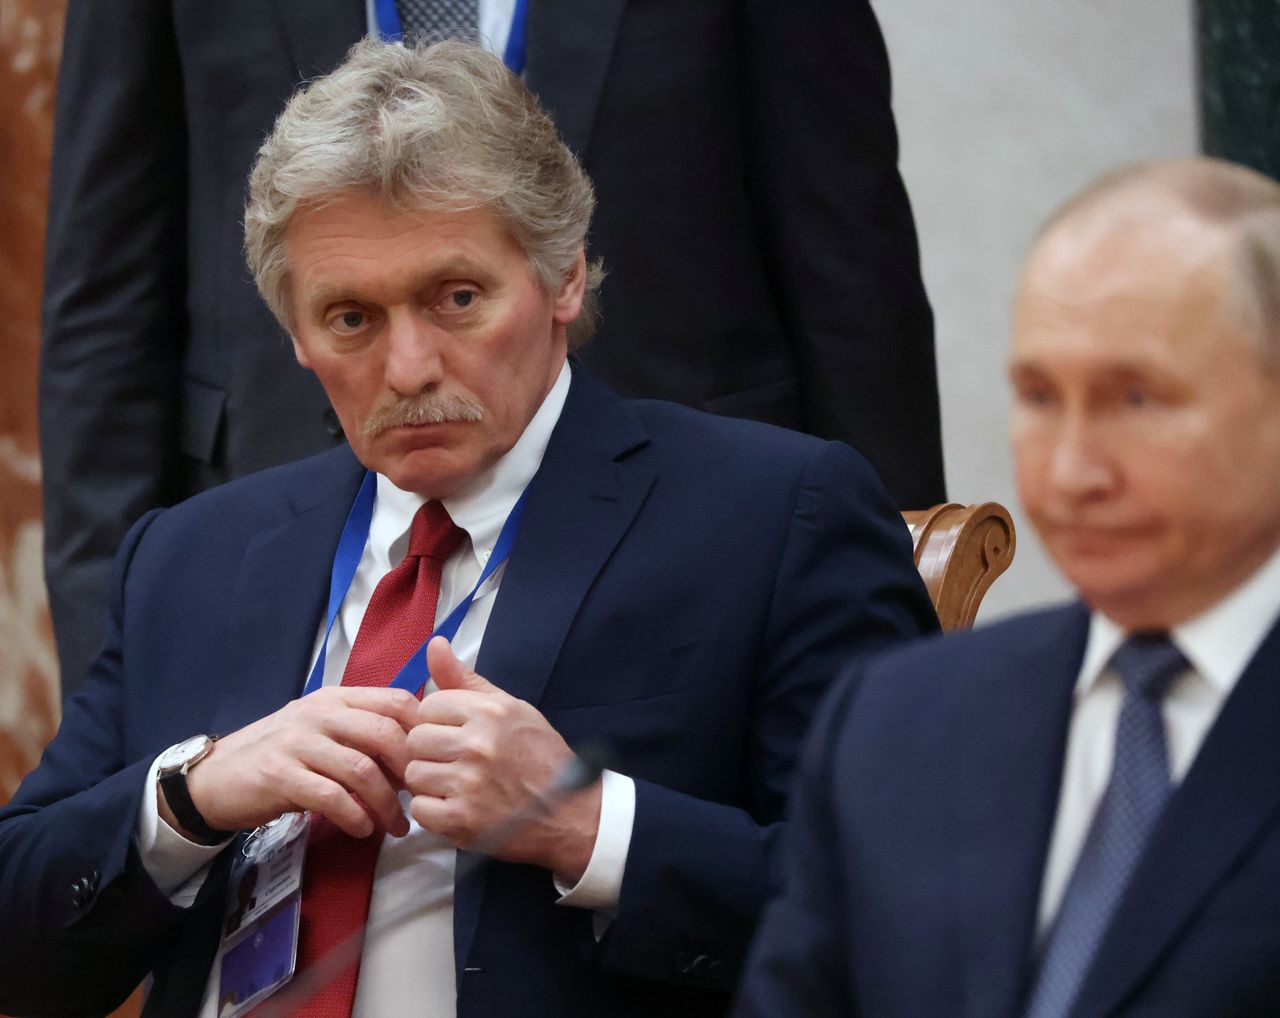 From the left: Kremlin spokesman Dmitry Peskov, President of Russia Vladimir Putin